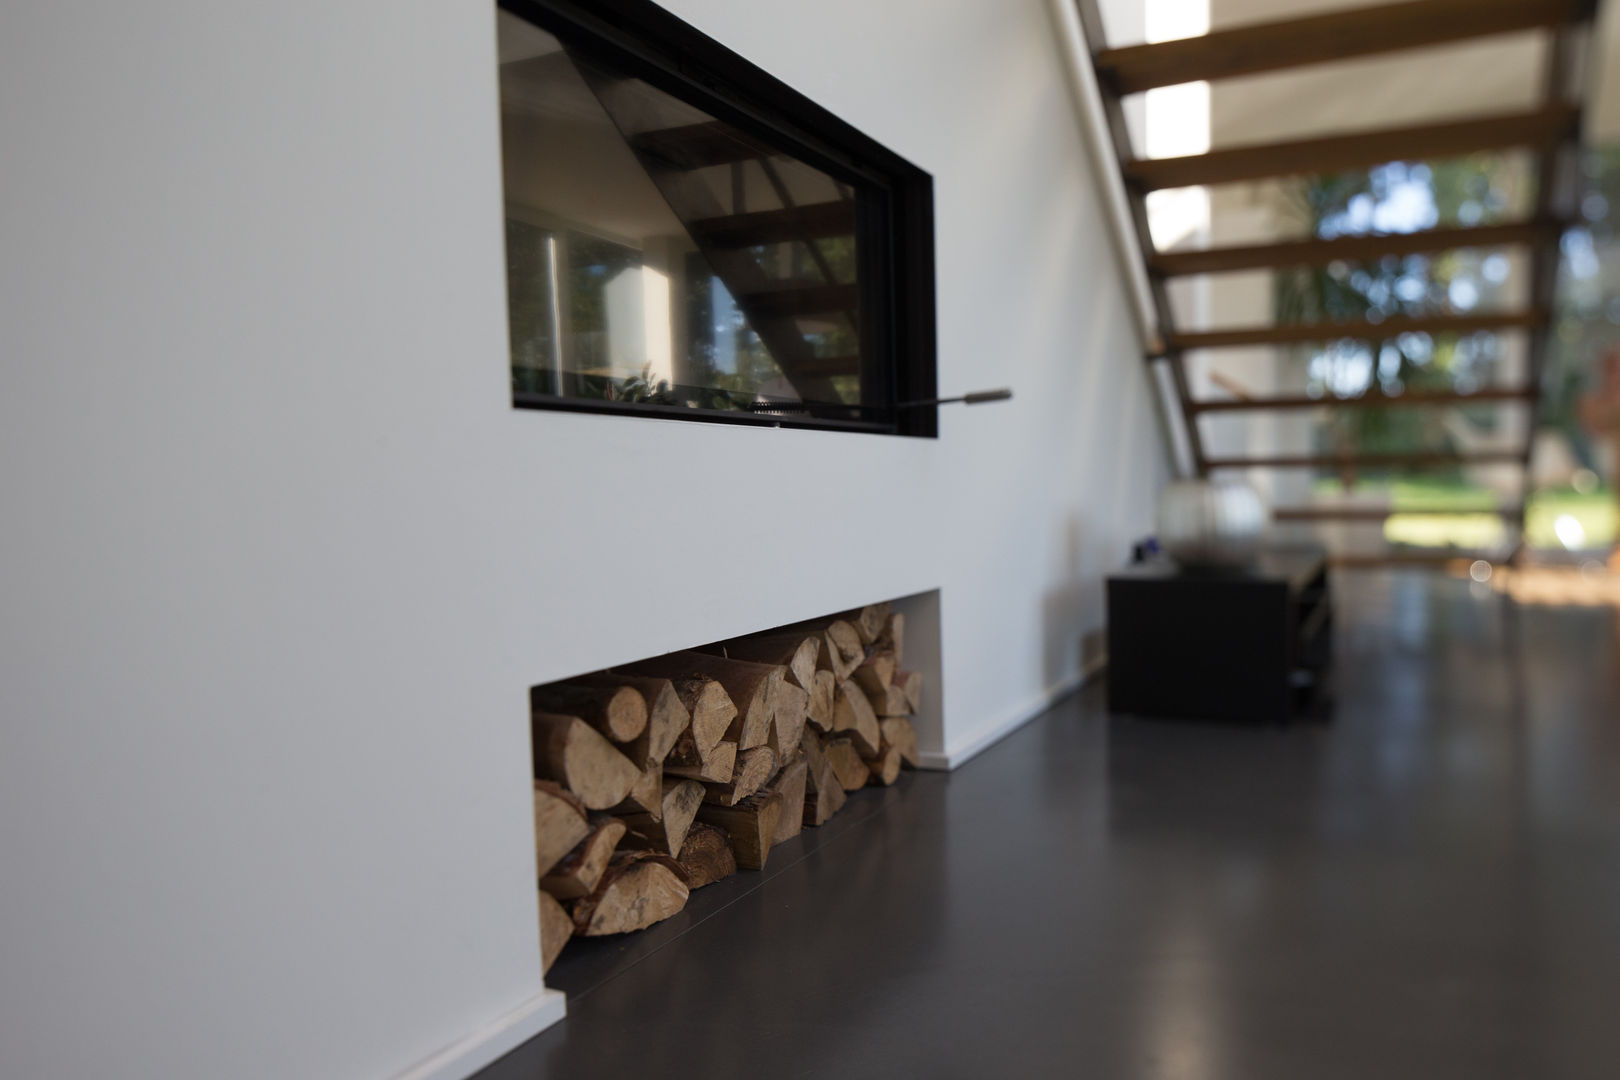 Einfamilienhaus Futura, Hellmers P2 | Architektur & Projekte Hellmers P2 | Architektur & Projekte Modern living room